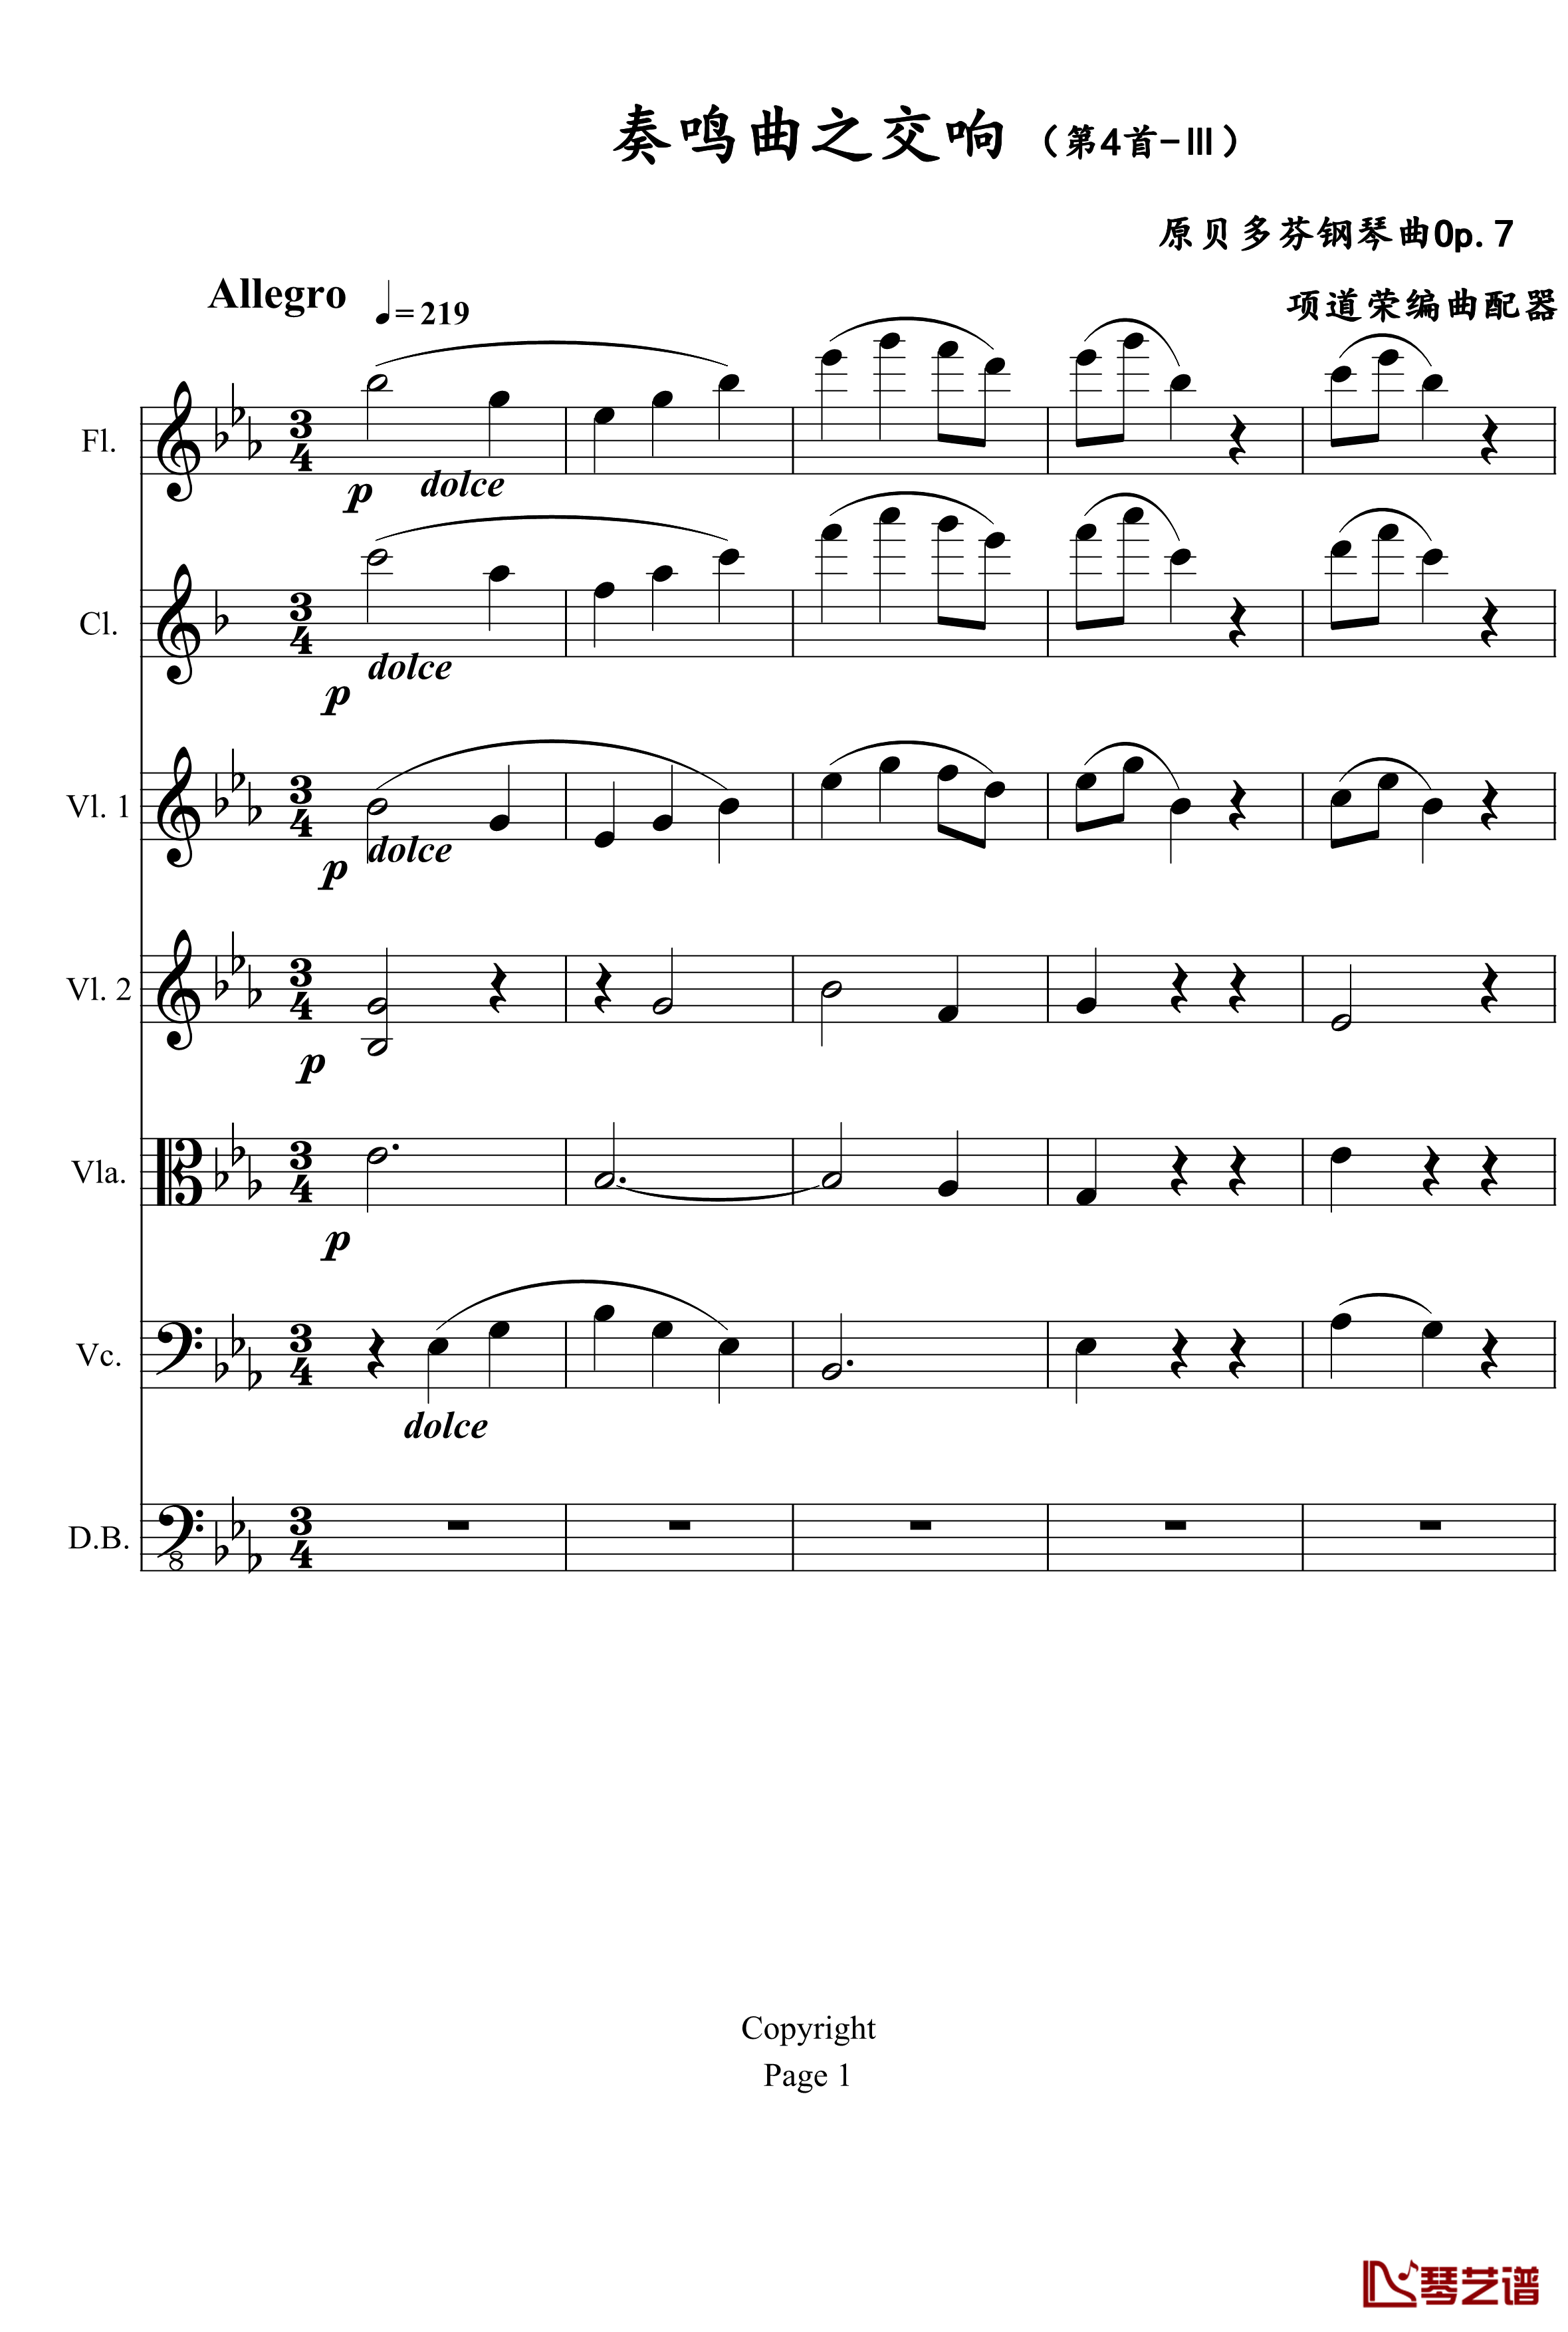 奏鸣曲之交响钢琴谱-第4首-Ⅲ-贝多芬-beethoven1